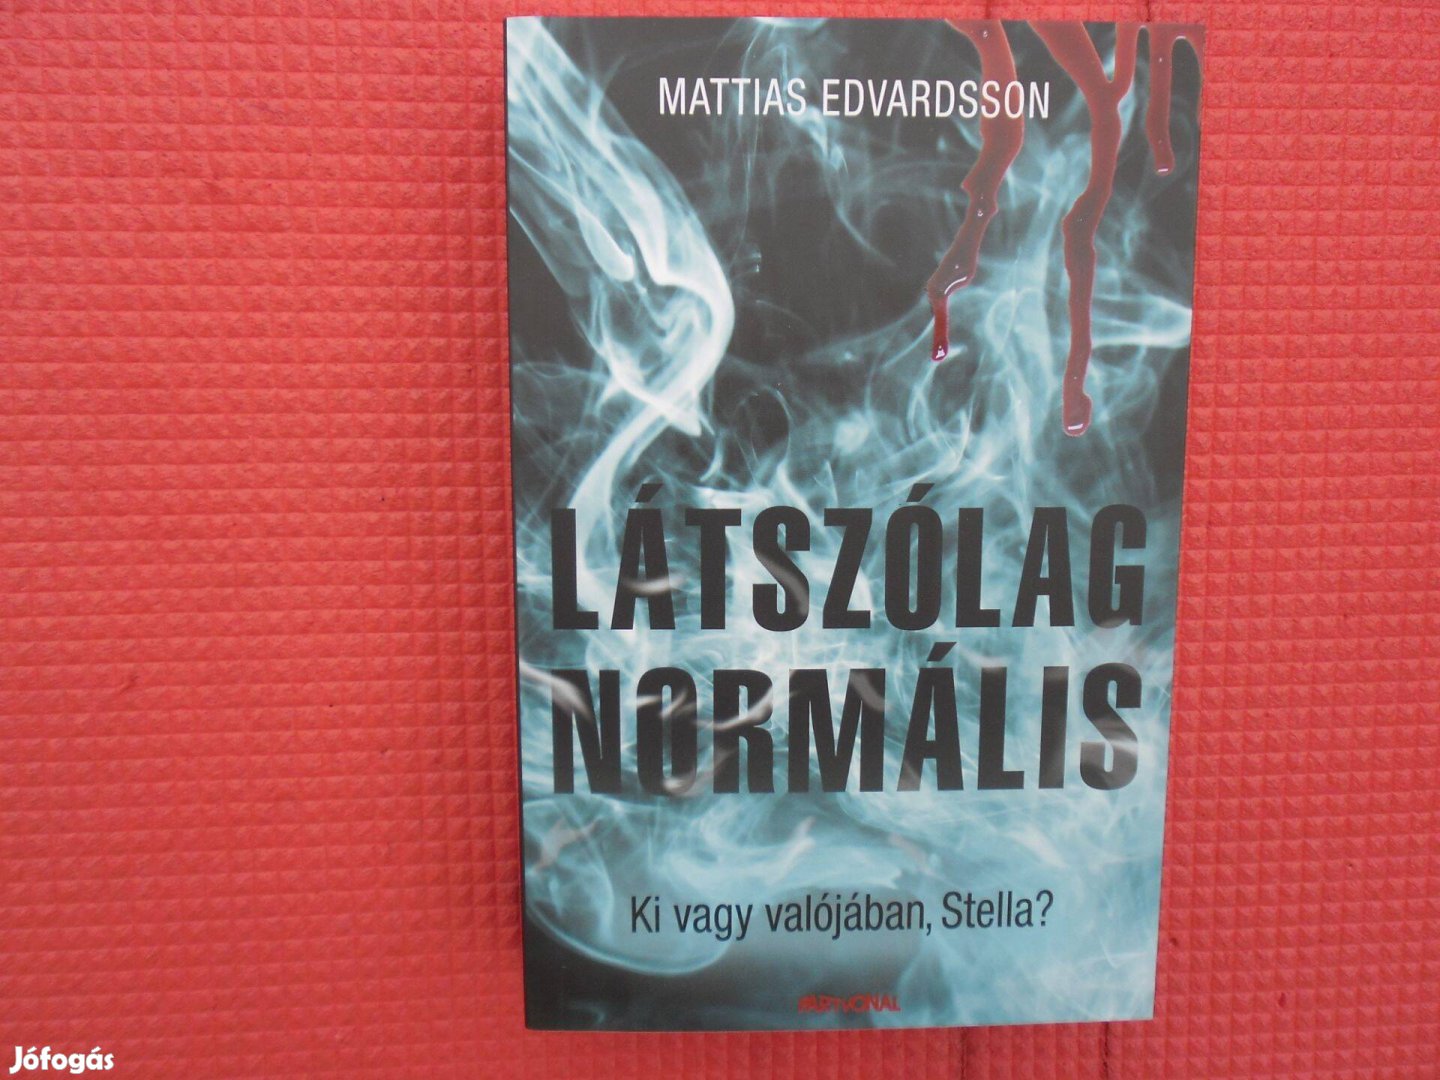 Mattias Edvardsson: Látszólag normális /Svéd krimik/